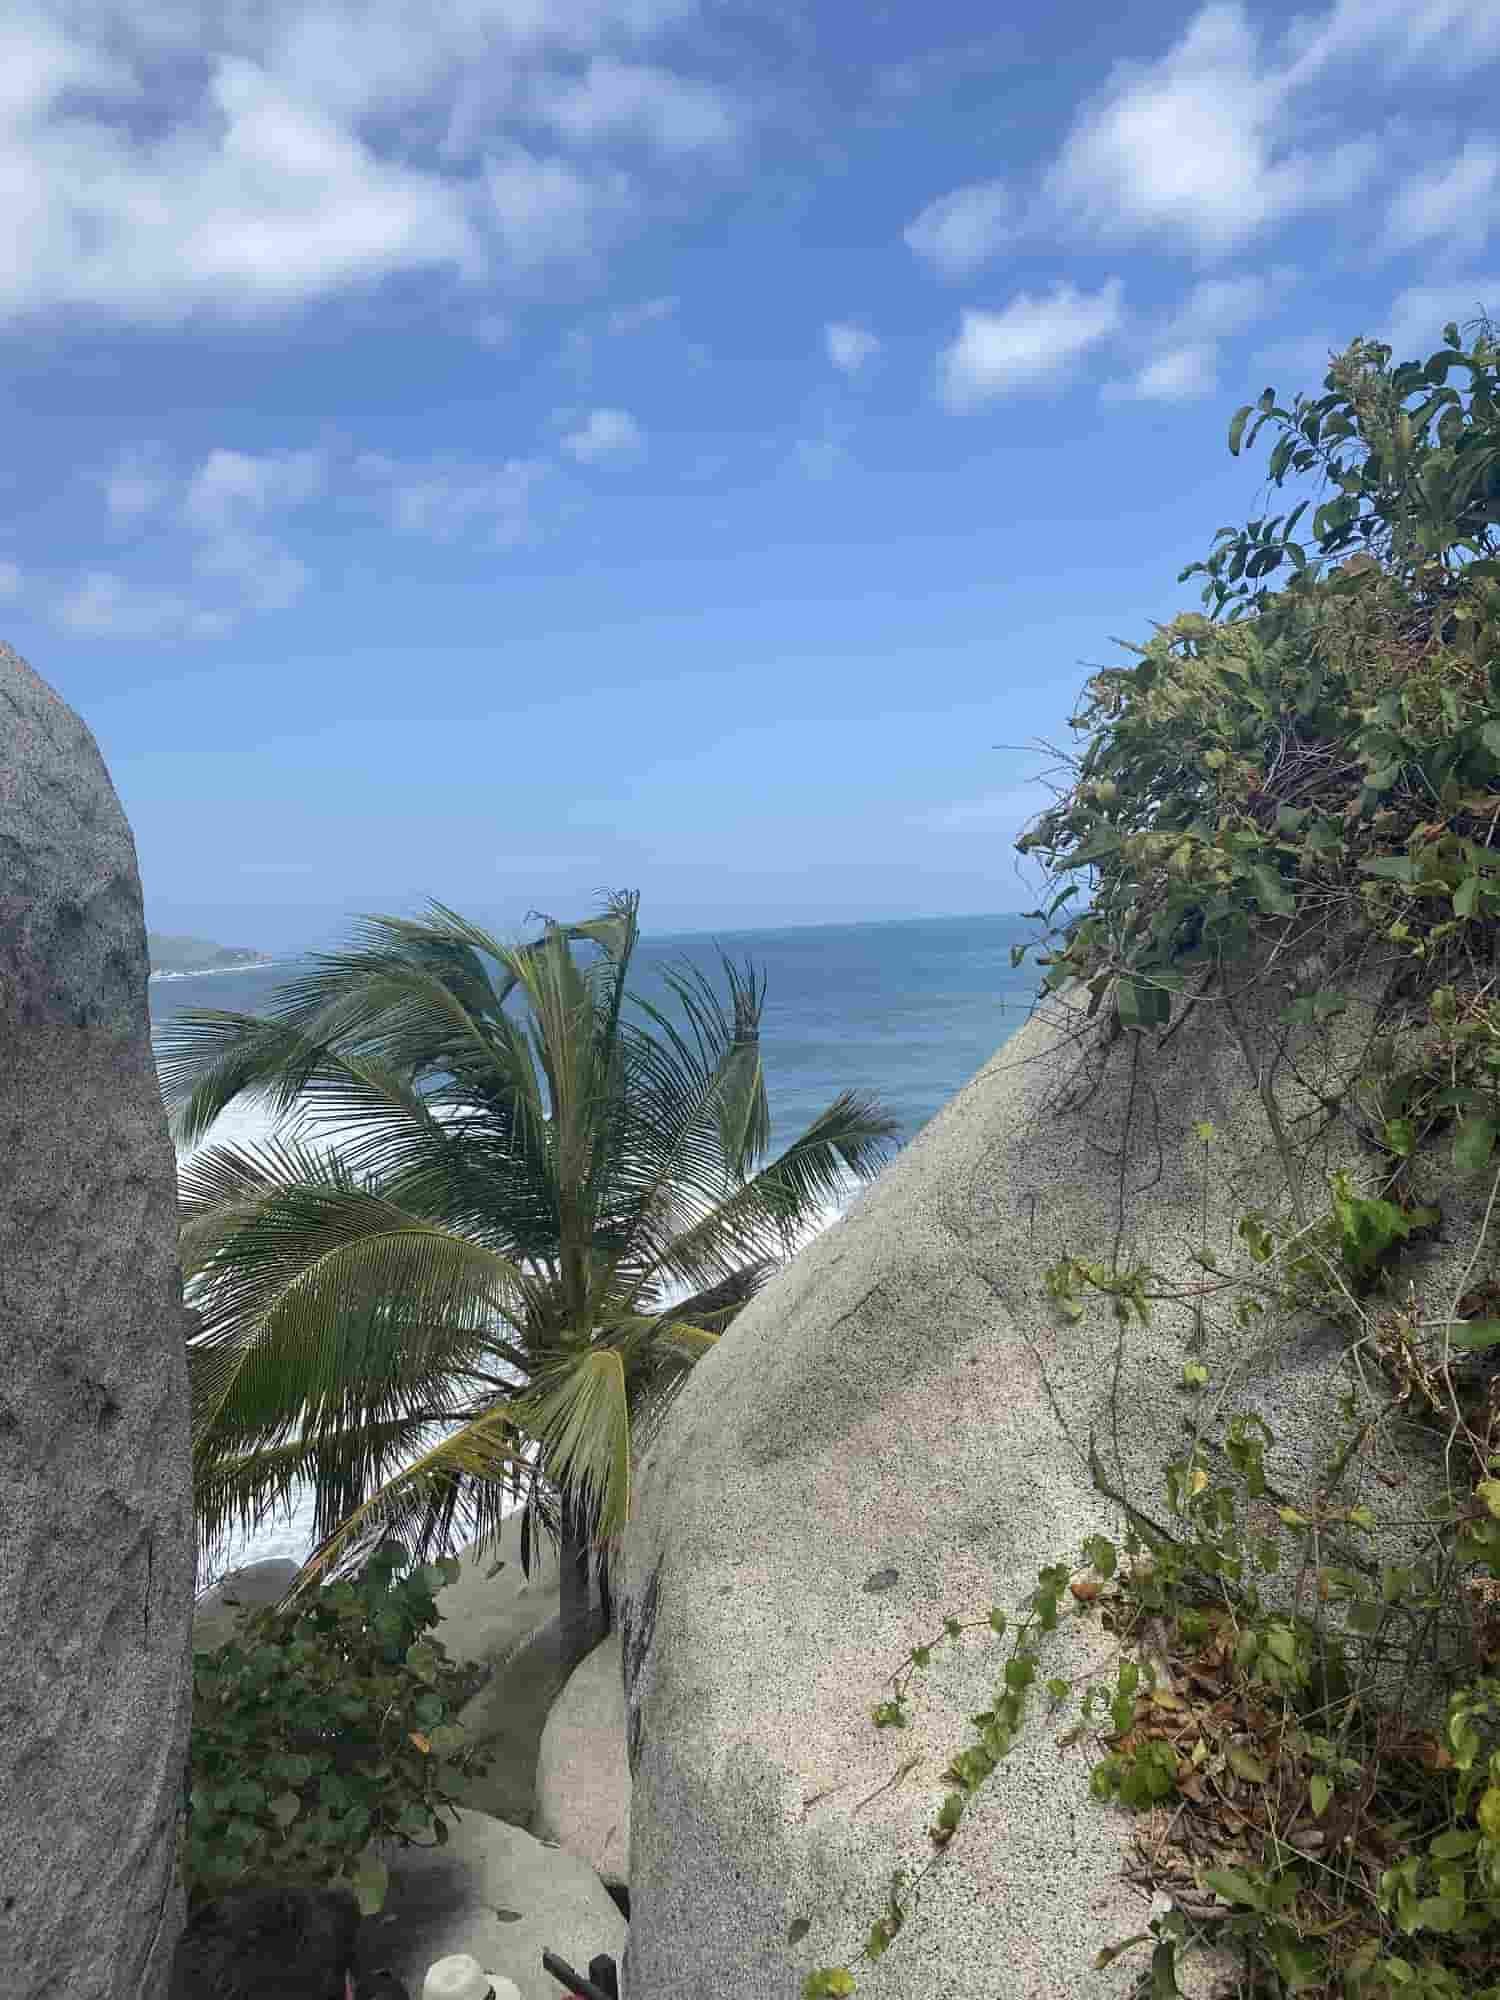 tropical-beach-view-between-rocks.jpg